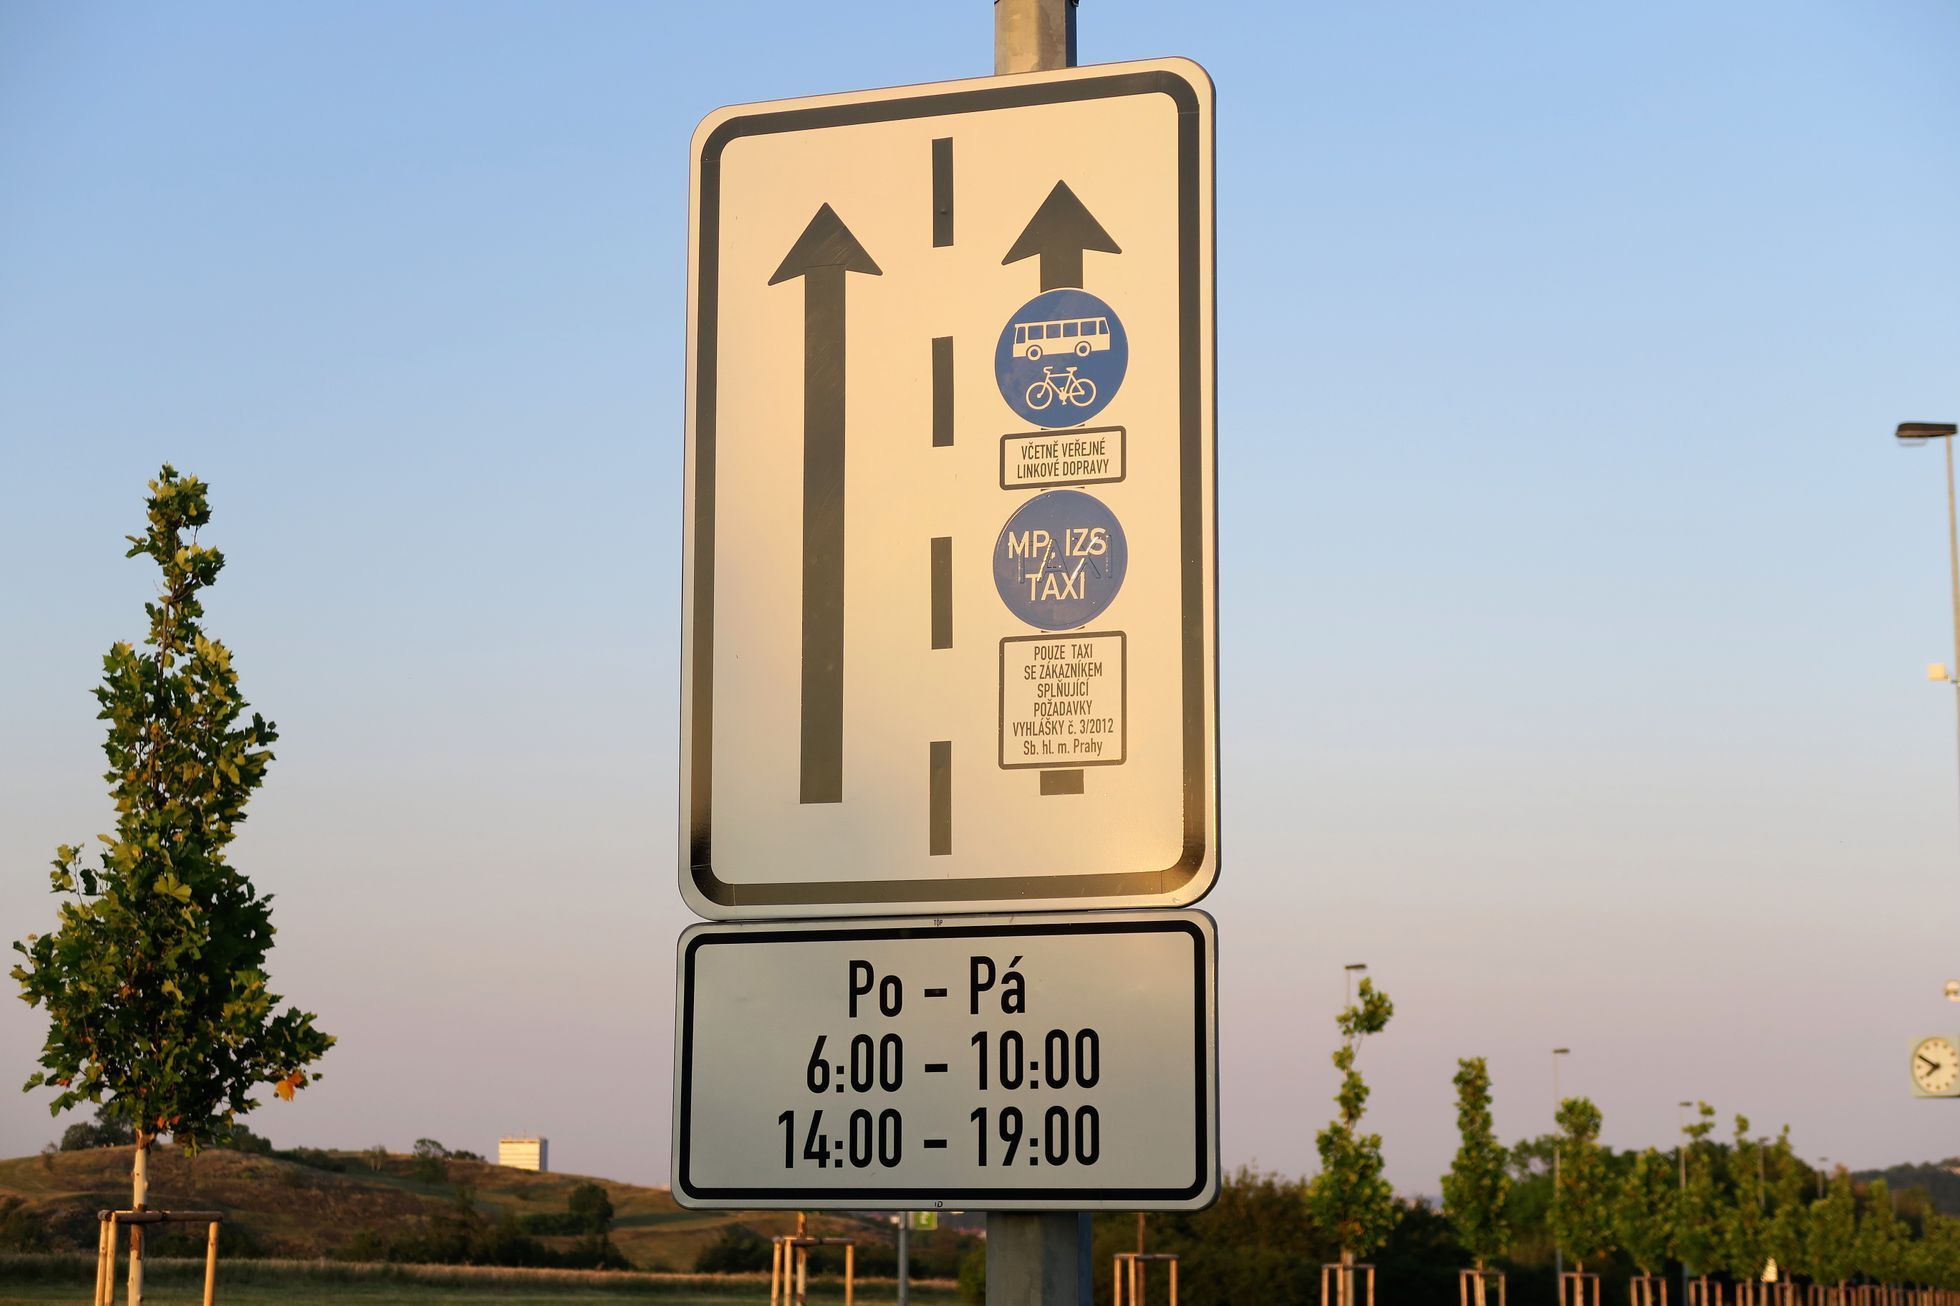 Monitoring vyhrazených jízdních pruhů Praha